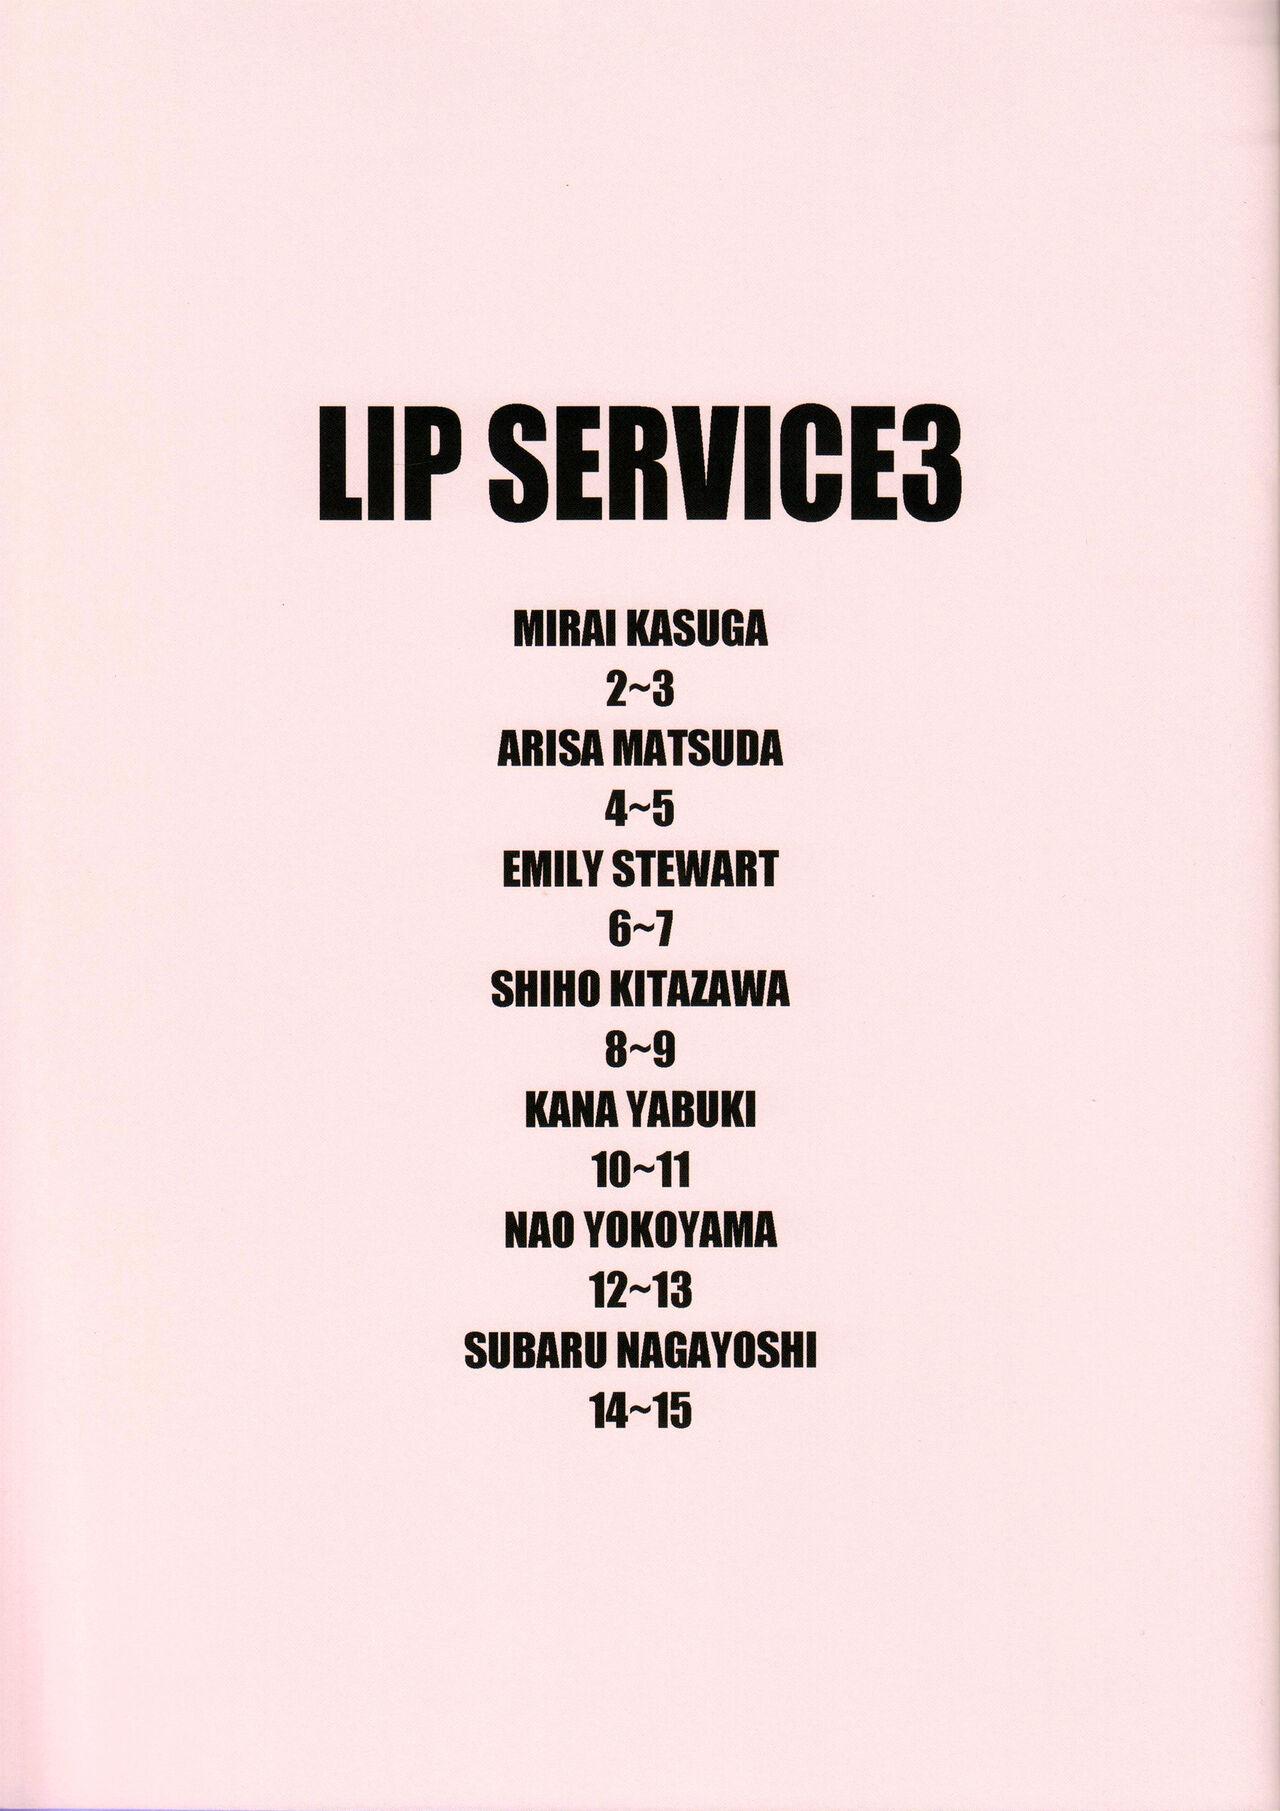 LIP SERVICE3 2